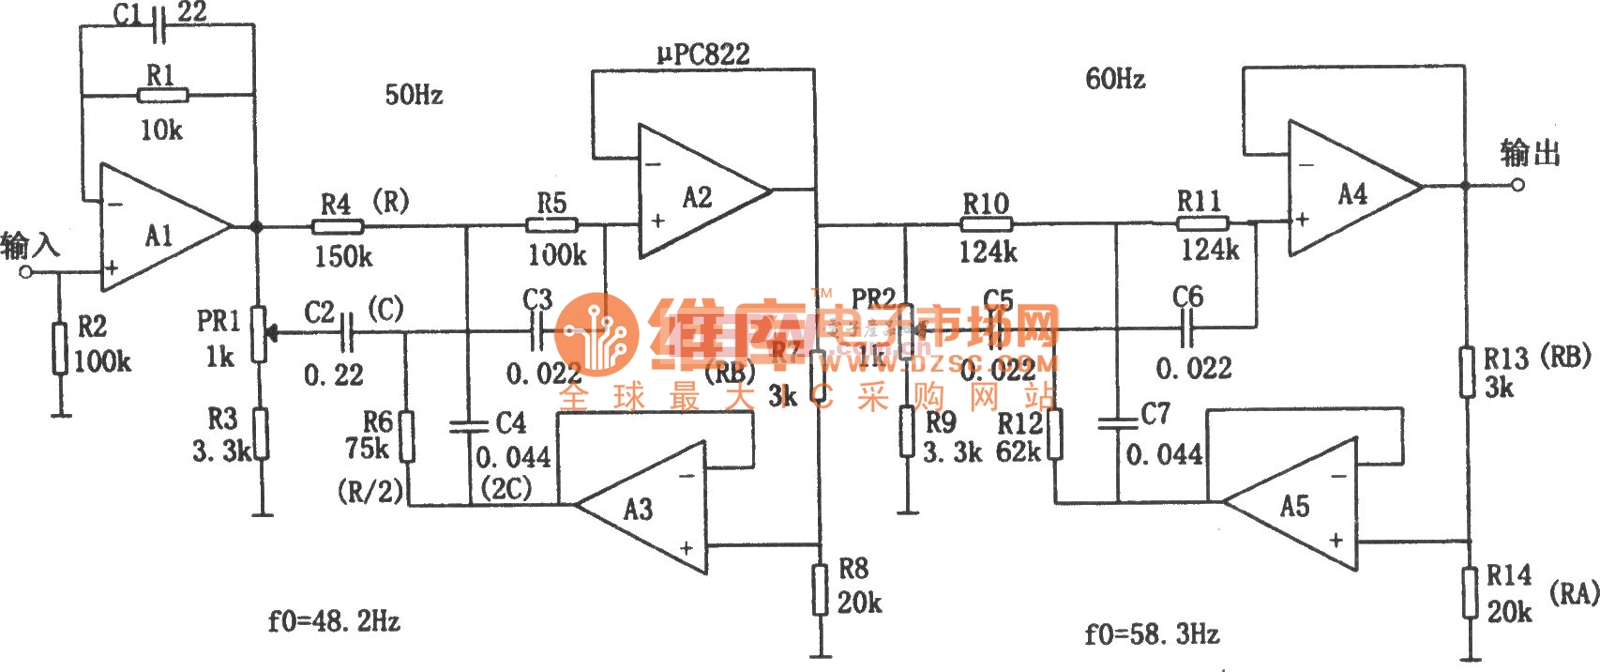 电源频率噪声滤波器(μPC822)电路图